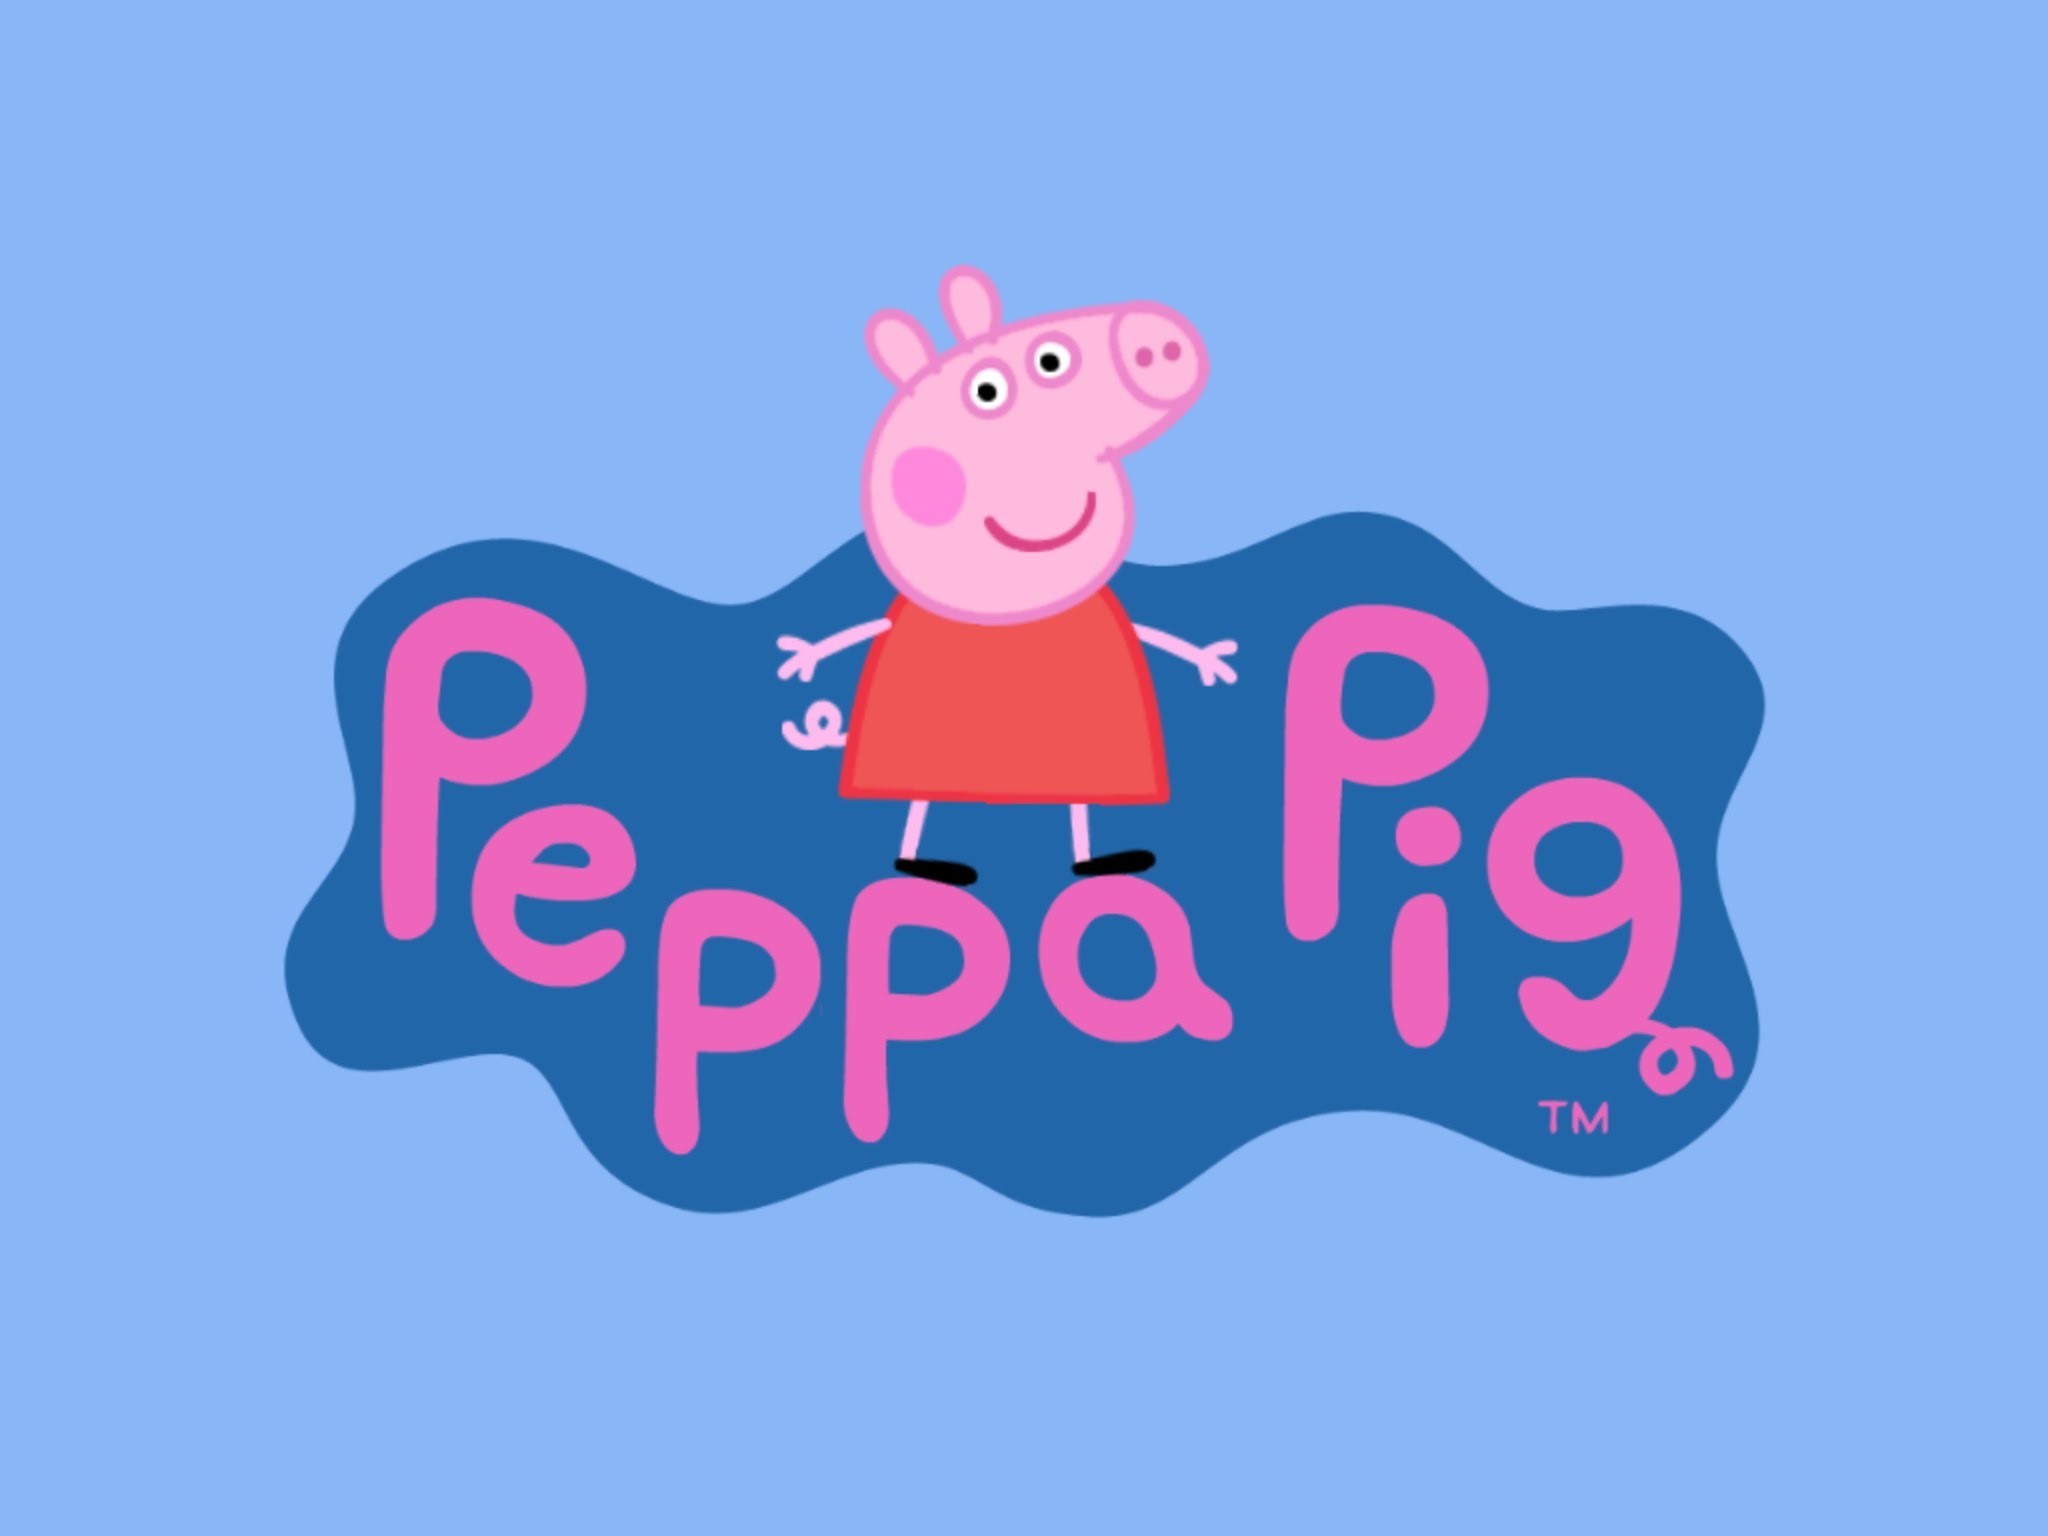 peppa pig fond d'écran hd,rose,texte,dessin animé,police de caractère,illustration